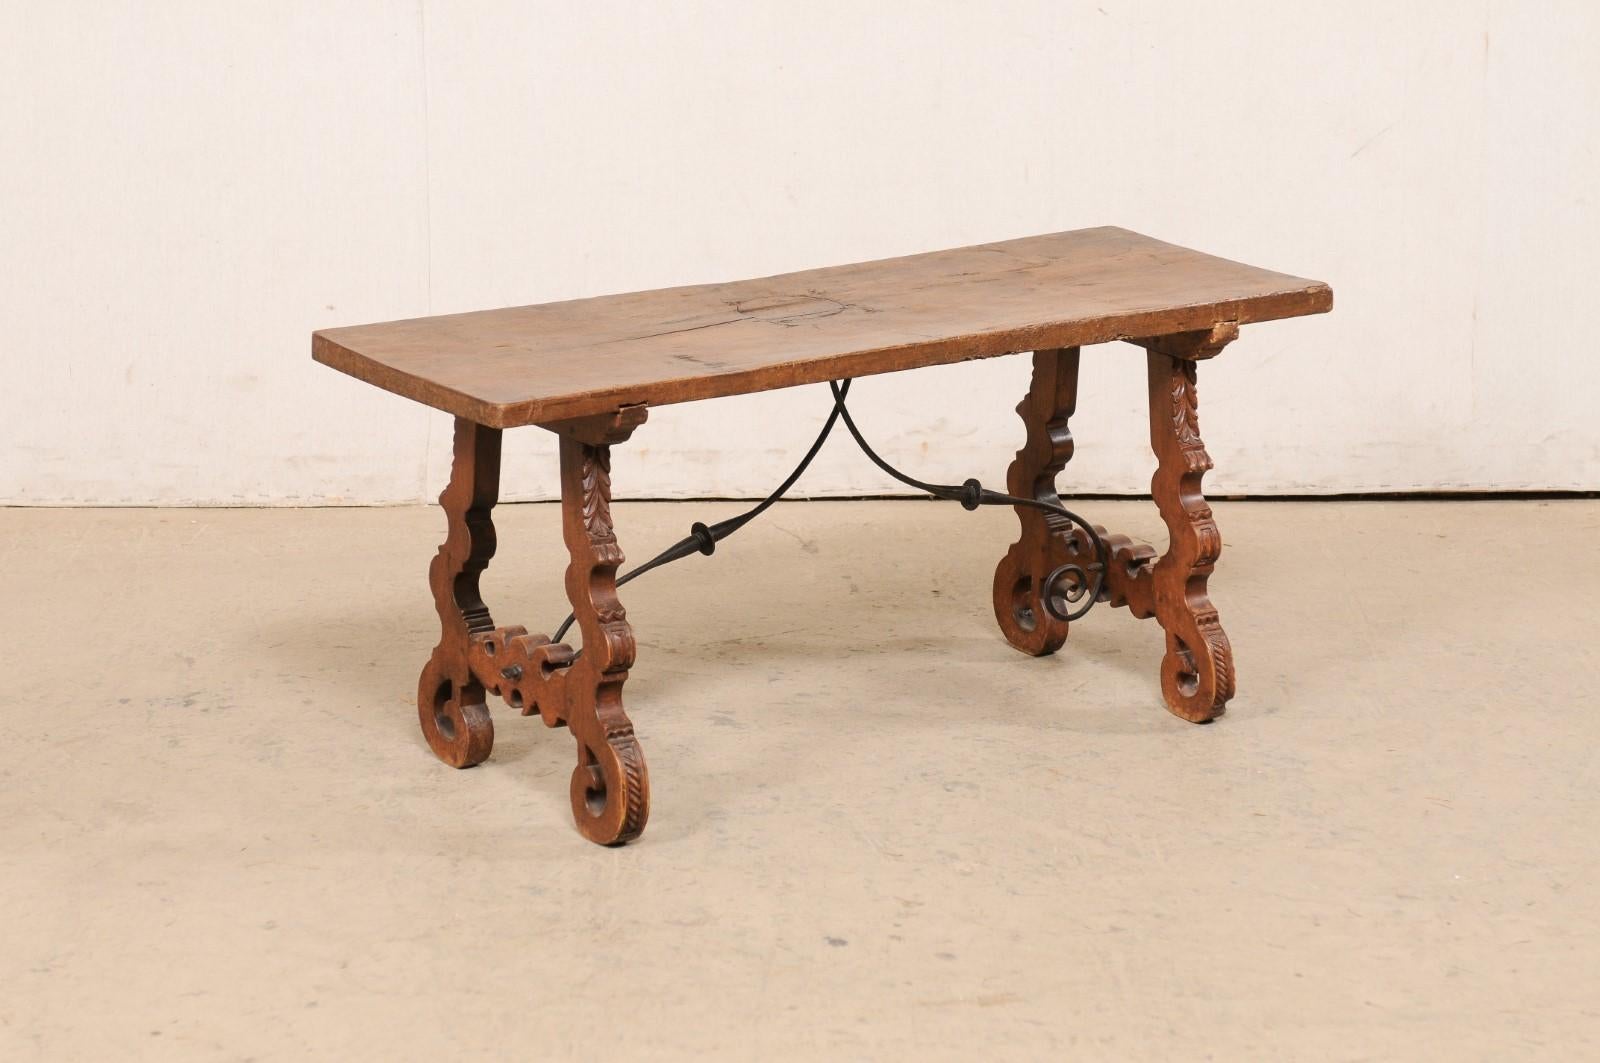 Table basse espagnole en bois, avec des pieds en lyre et un châssis en fer, du début du XIXe et du XXe siècle. Cette table ancienne d'Espagne présente un plateau rectangulaire à une seule planche, qui repose sur une paire de pieds en forme de lyre